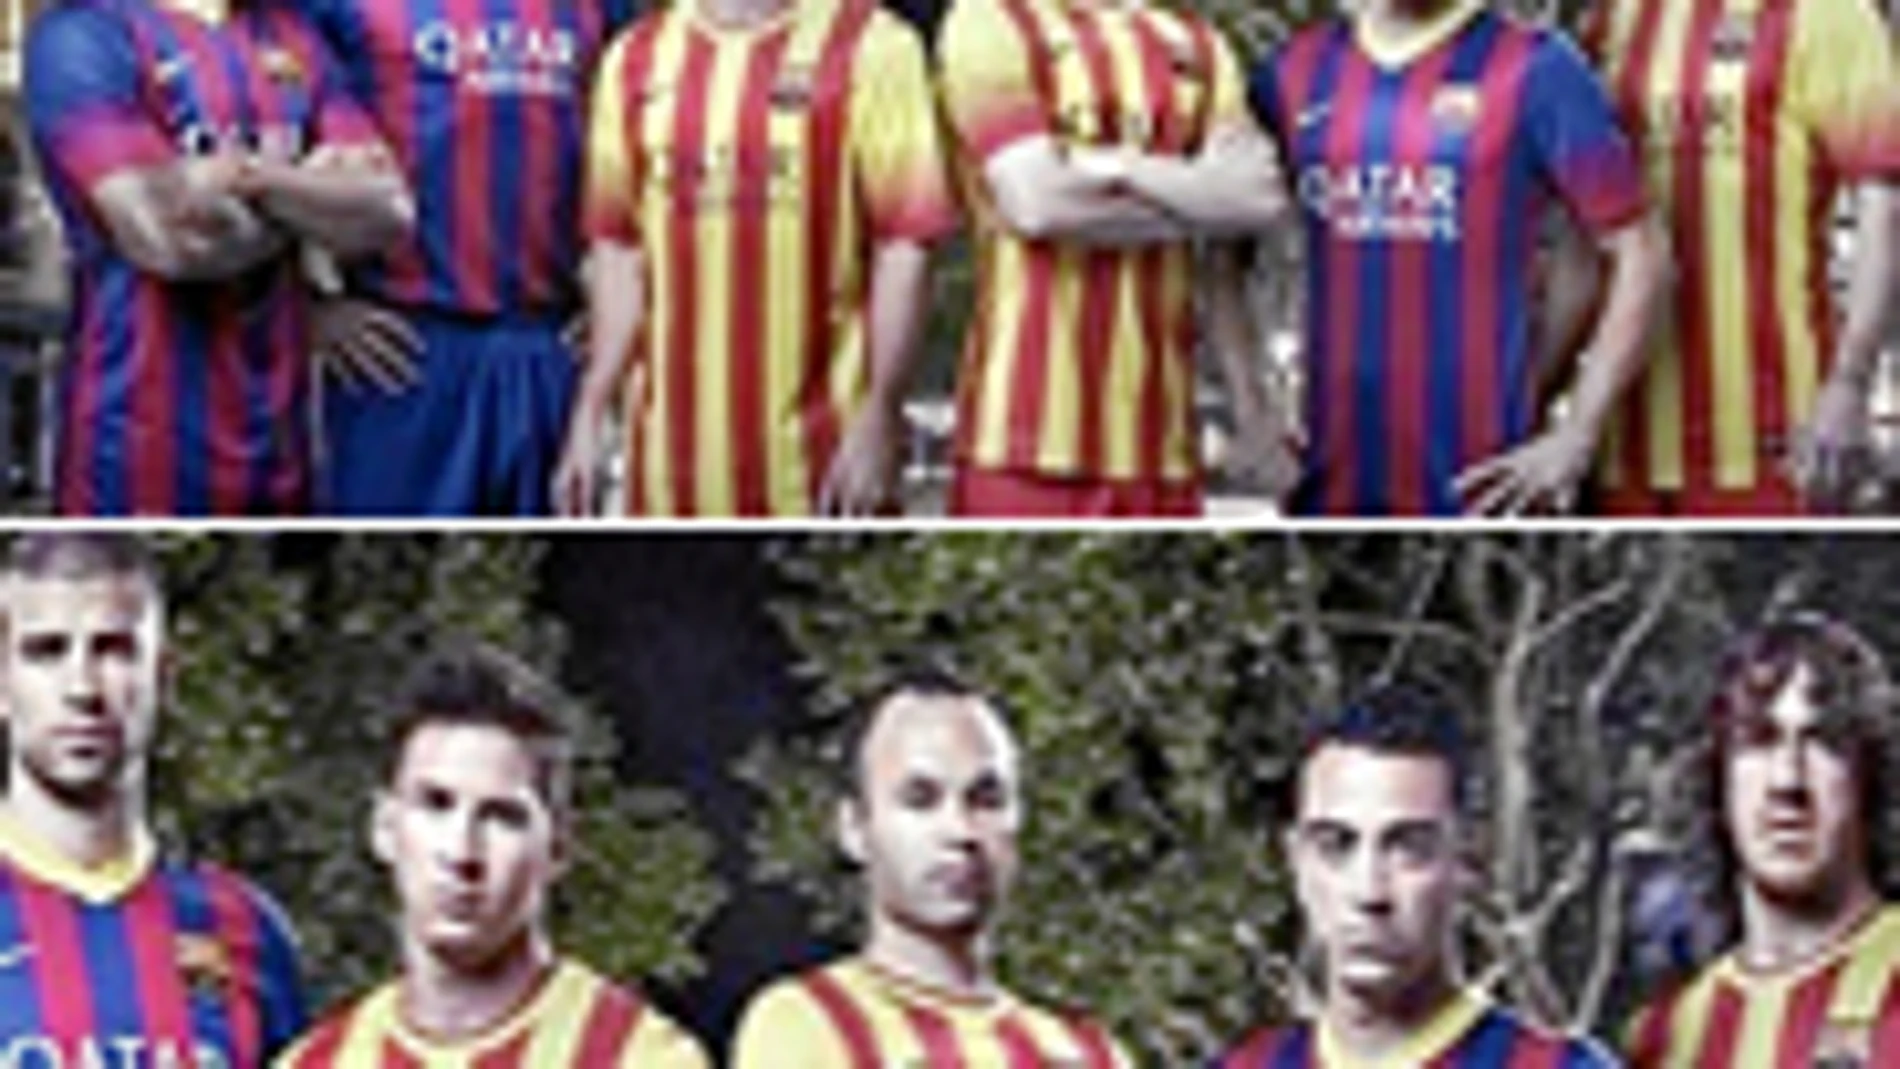 El Barça subió ayer una foto a Instagram (abajo) en la que recortaba a Thiago respecto a la original (arriba), lo que generó muchos rumores sobre el futuro del jugador